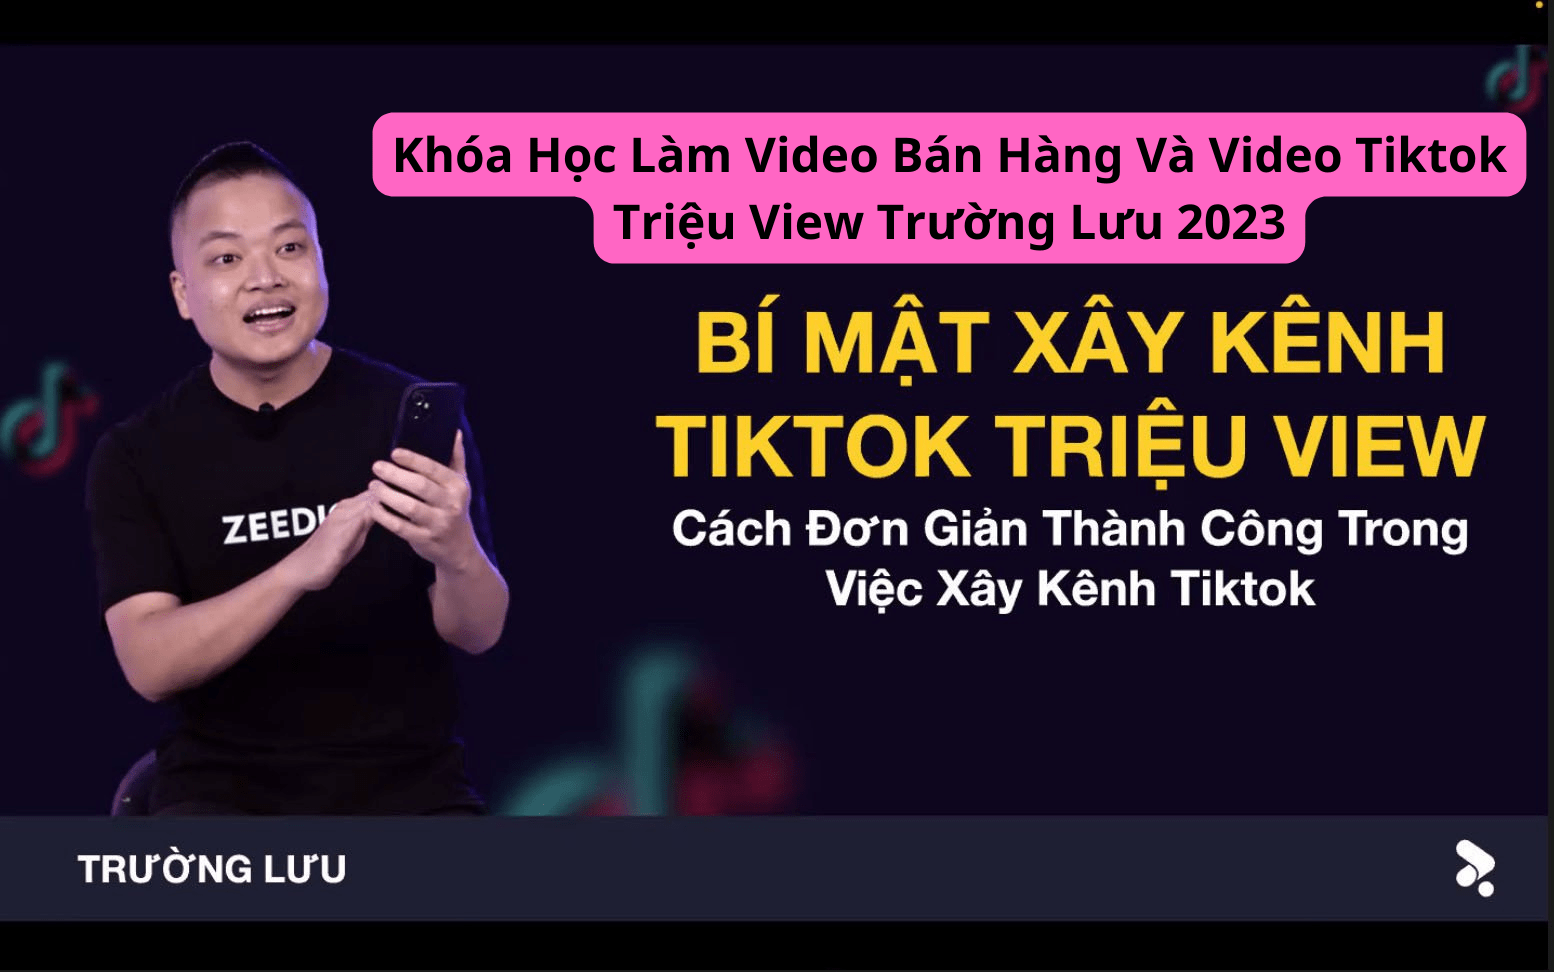 Khóa Học Làm Video Bán Hàng Và Video Tiktok Triệu View Trường Lưu 2023